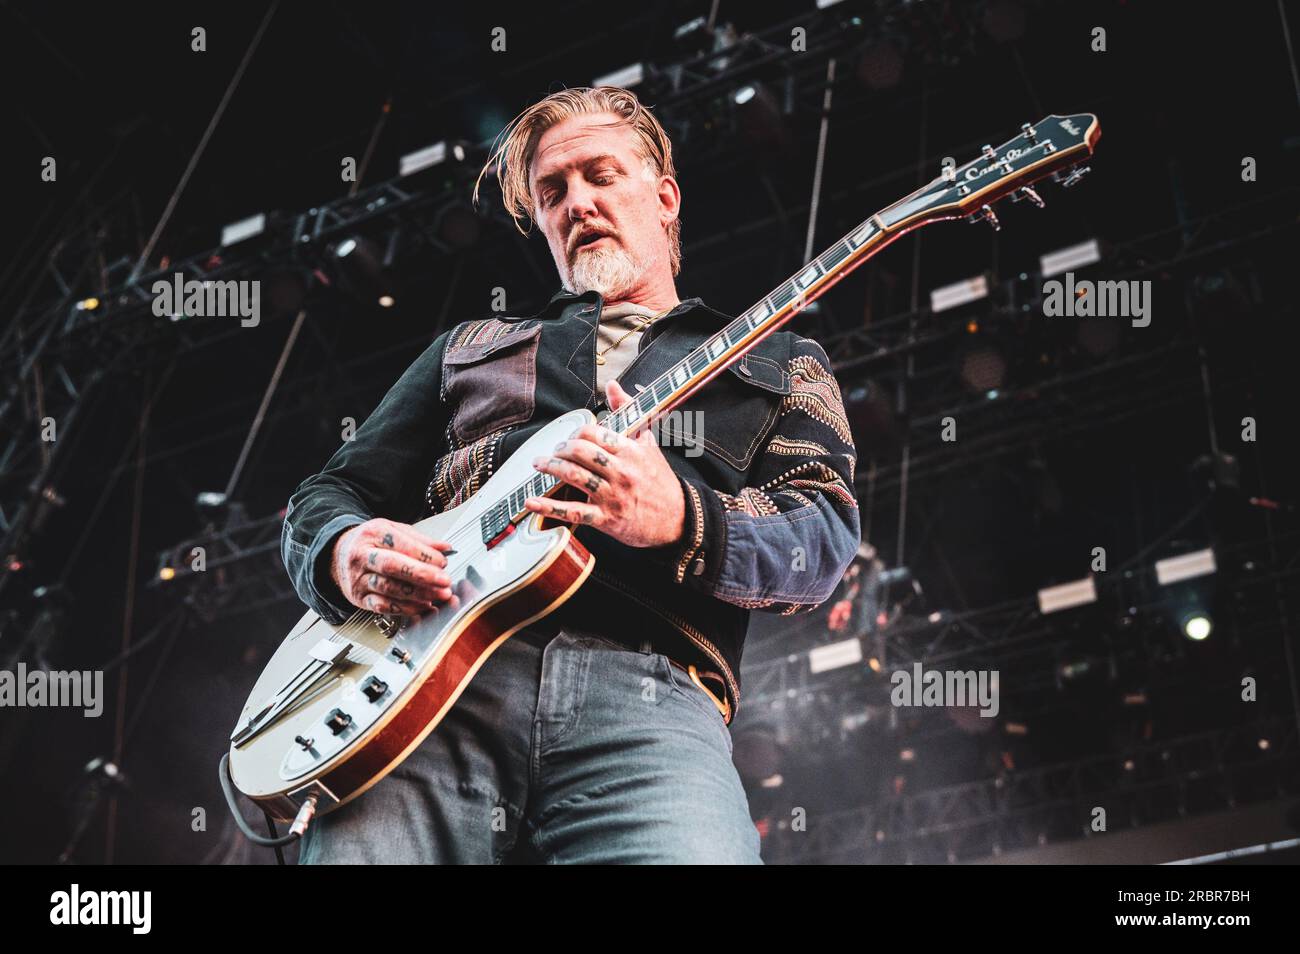 MADRID, MAD COOL FESTIVAL 2023, ESPAÑA: Josh Homme, cantante y guitarrista de la banda de rock estadounidense Queen of the Stone Age (también conocida como QOTSA), actuando en directo en el escenario del Mad Cool Festival 2023. Foto de stock